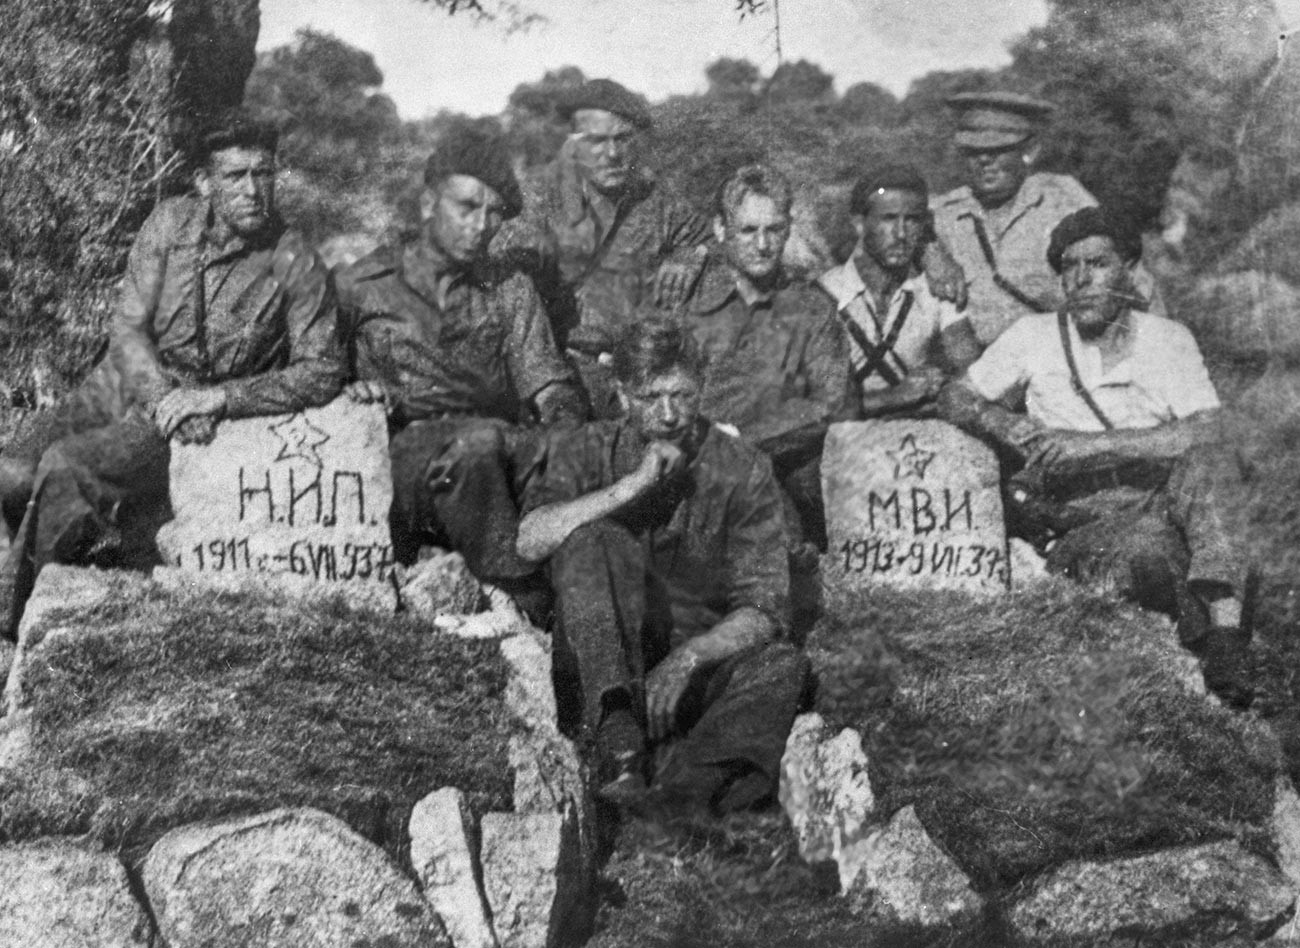 Tripulaciones de tanques soviéticos en las tumbas de sus camaradas en España.
